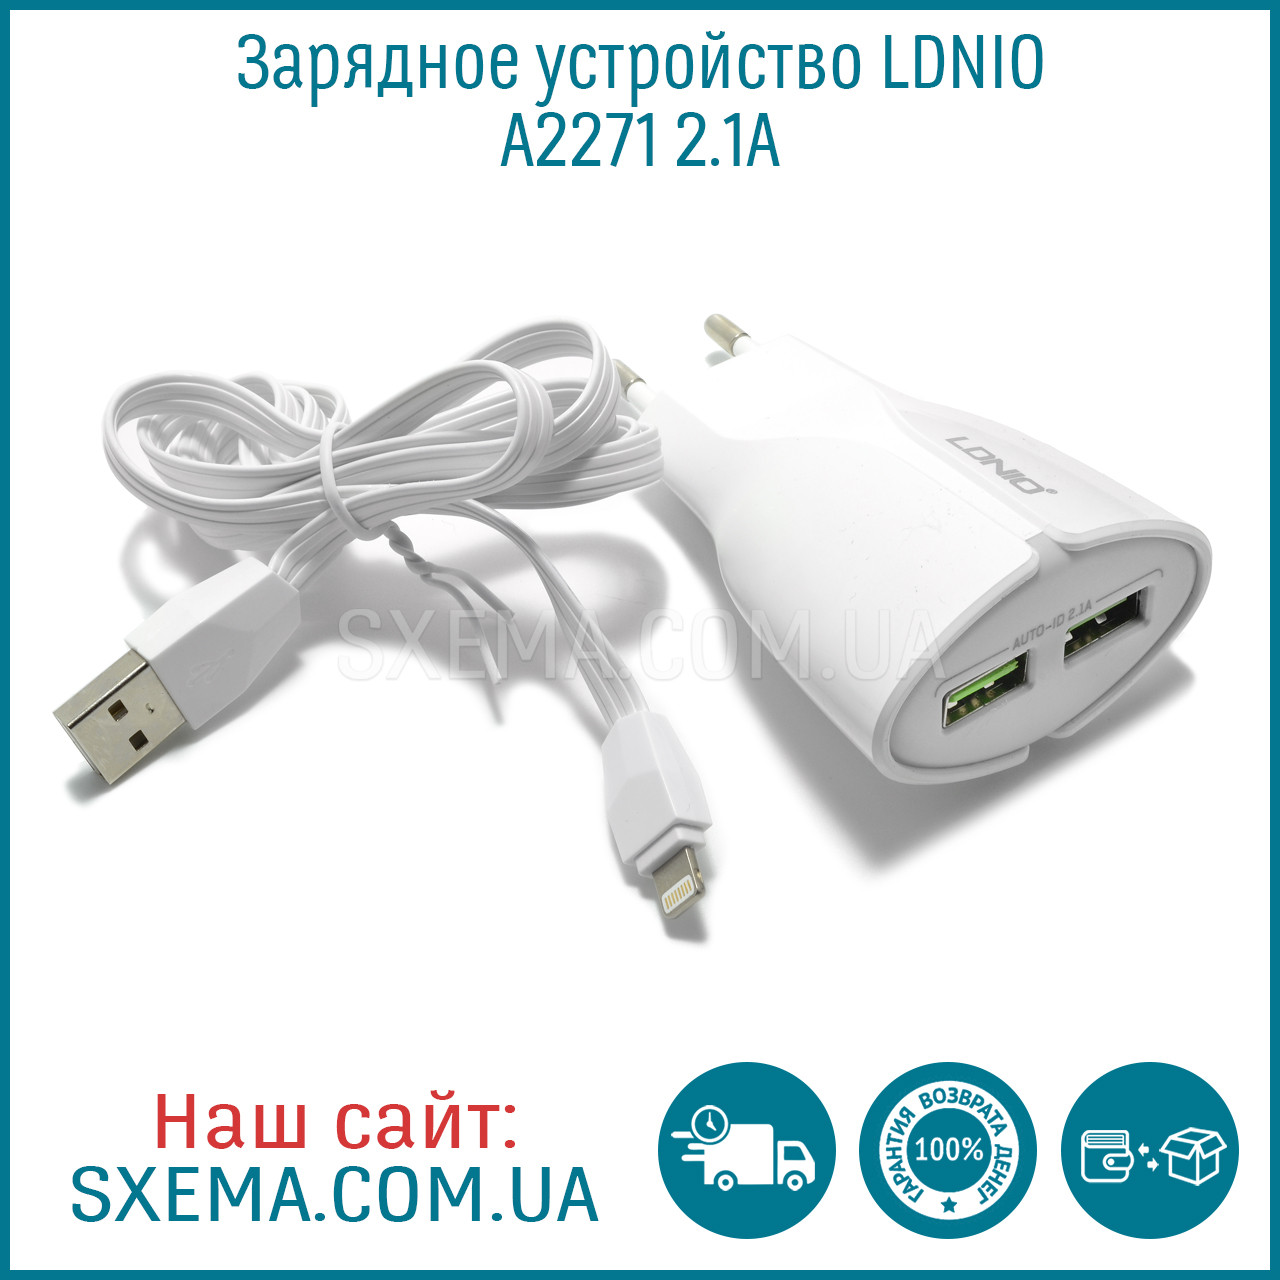 Мережевий зарядний пристрій LDNIO A2271 2.1A, 2 роз'єми USB, з кабелем